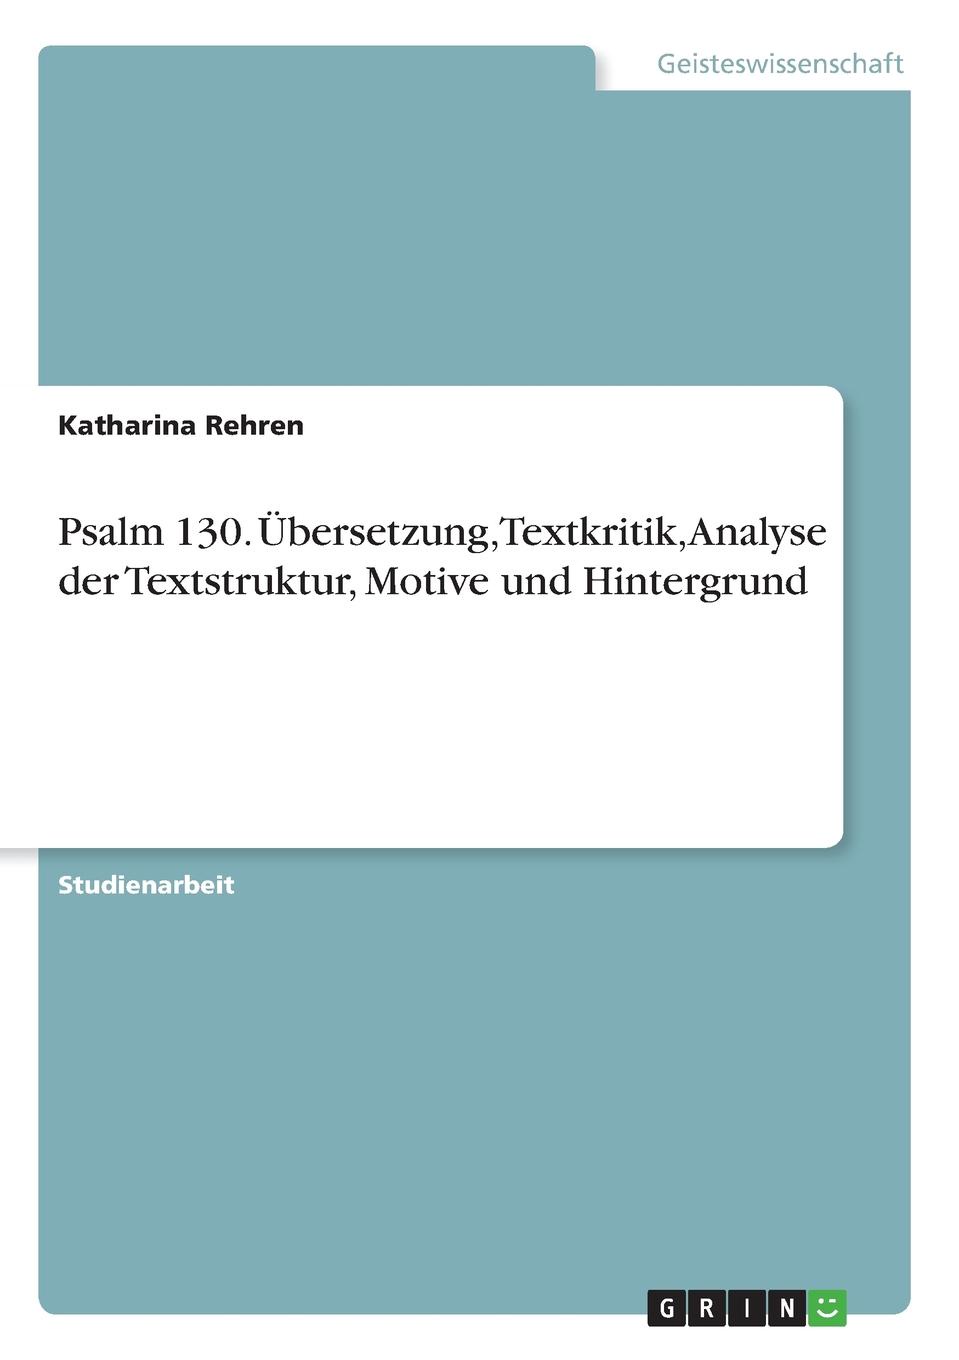 Psalm 130. Ubersetzung, Textkritik, Analyse der Textstruktur, Motive und Hintergrund